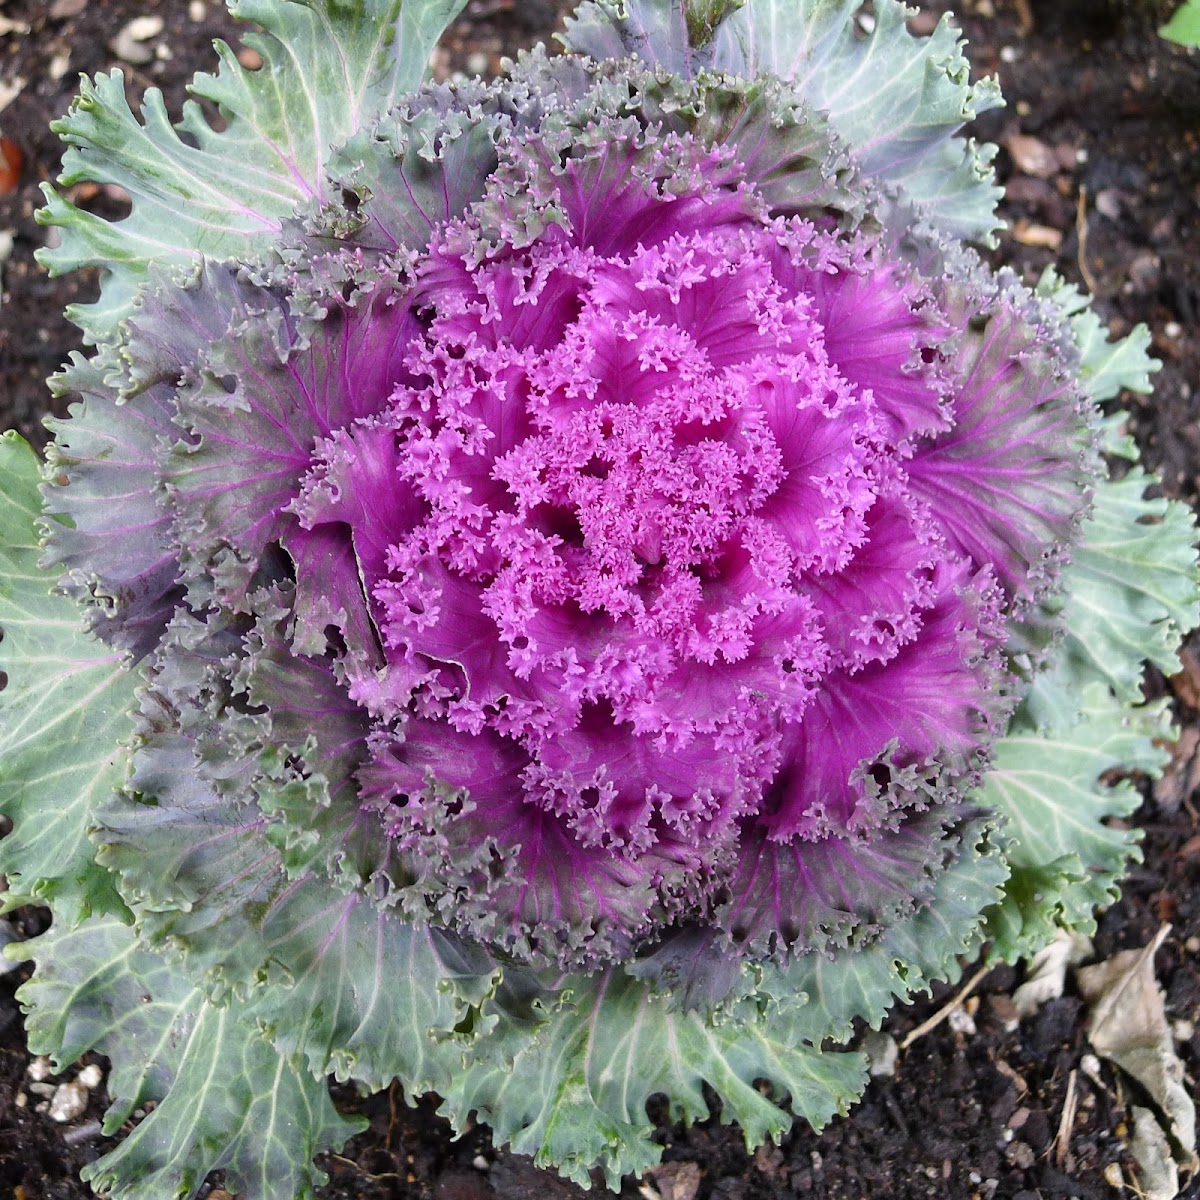 Flowering cabbage/ Kale